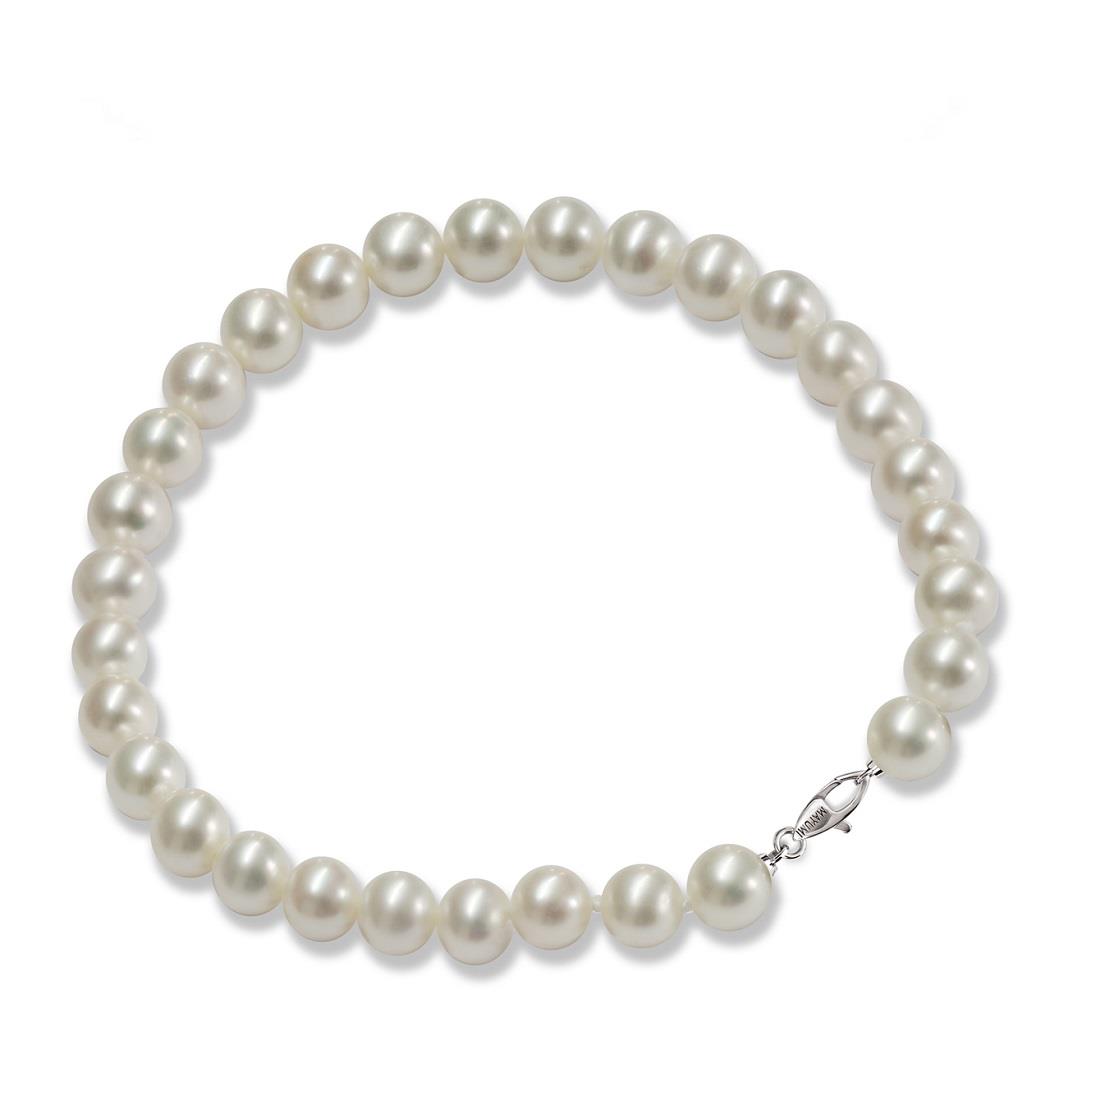 Brazalete en plata con perlas - MAYUMI